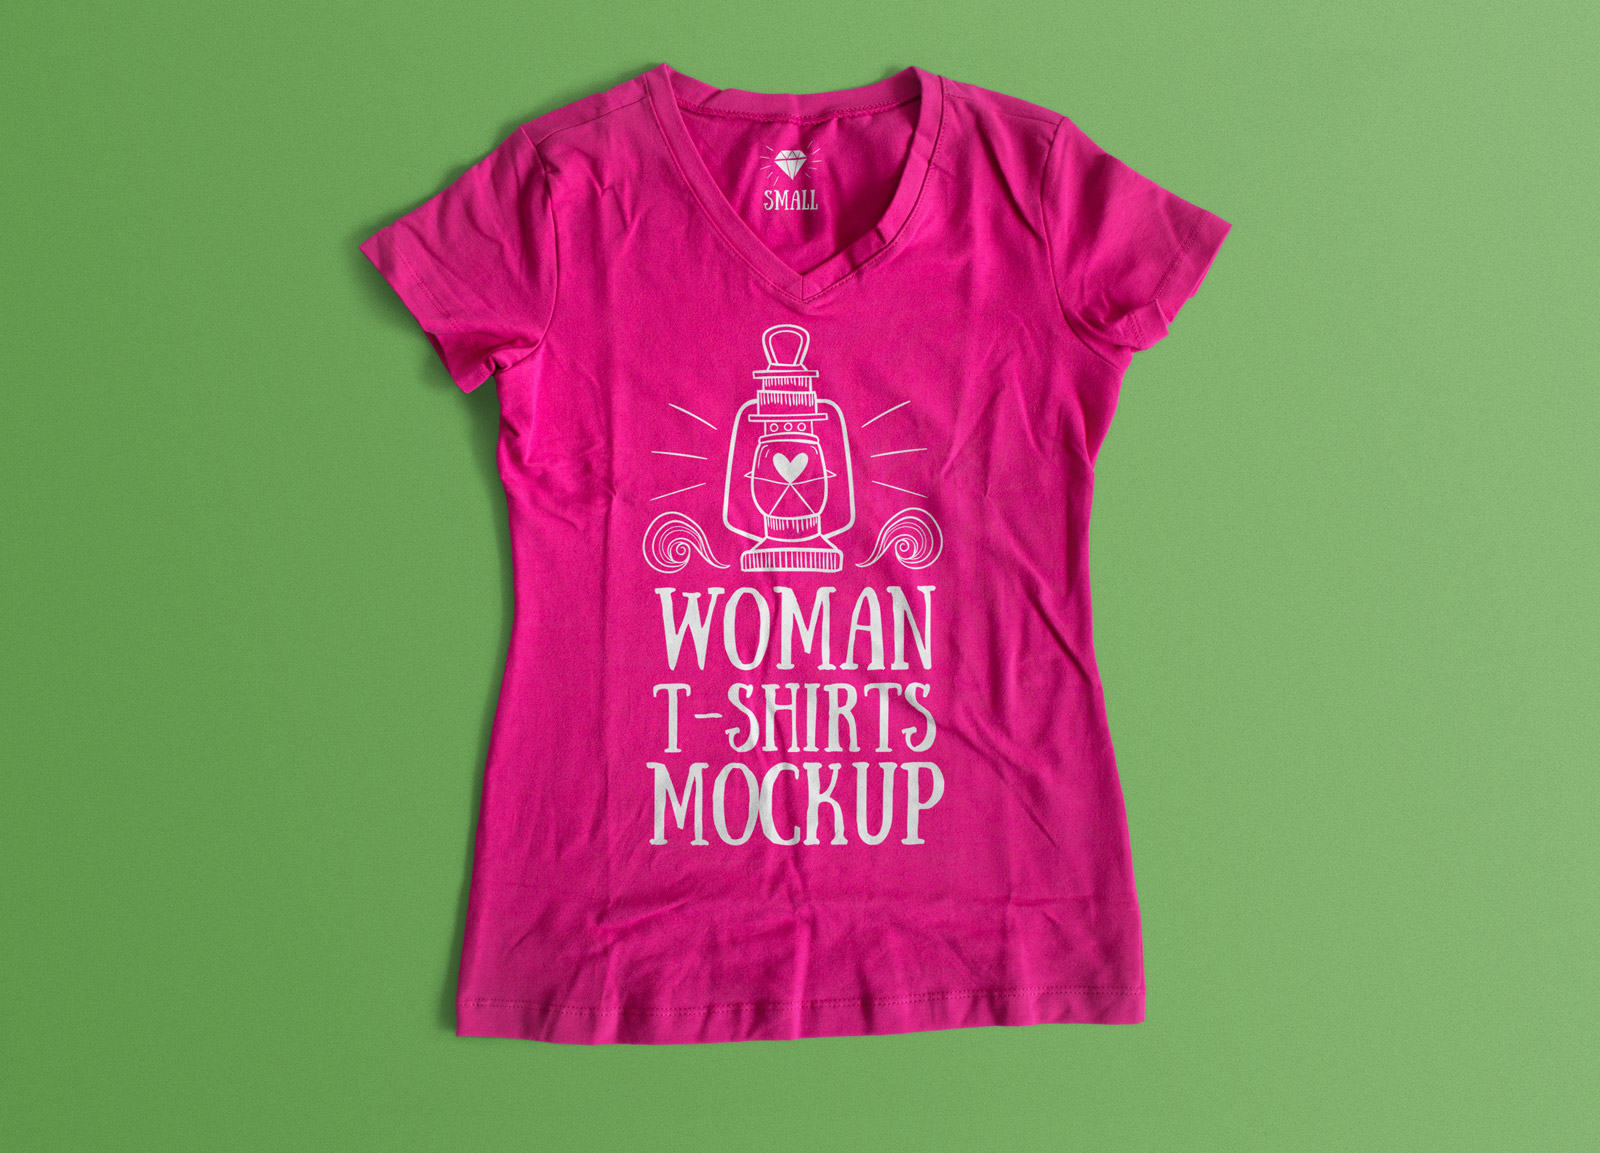 Free-Woman-T-shirt-Mockup-PSD-file